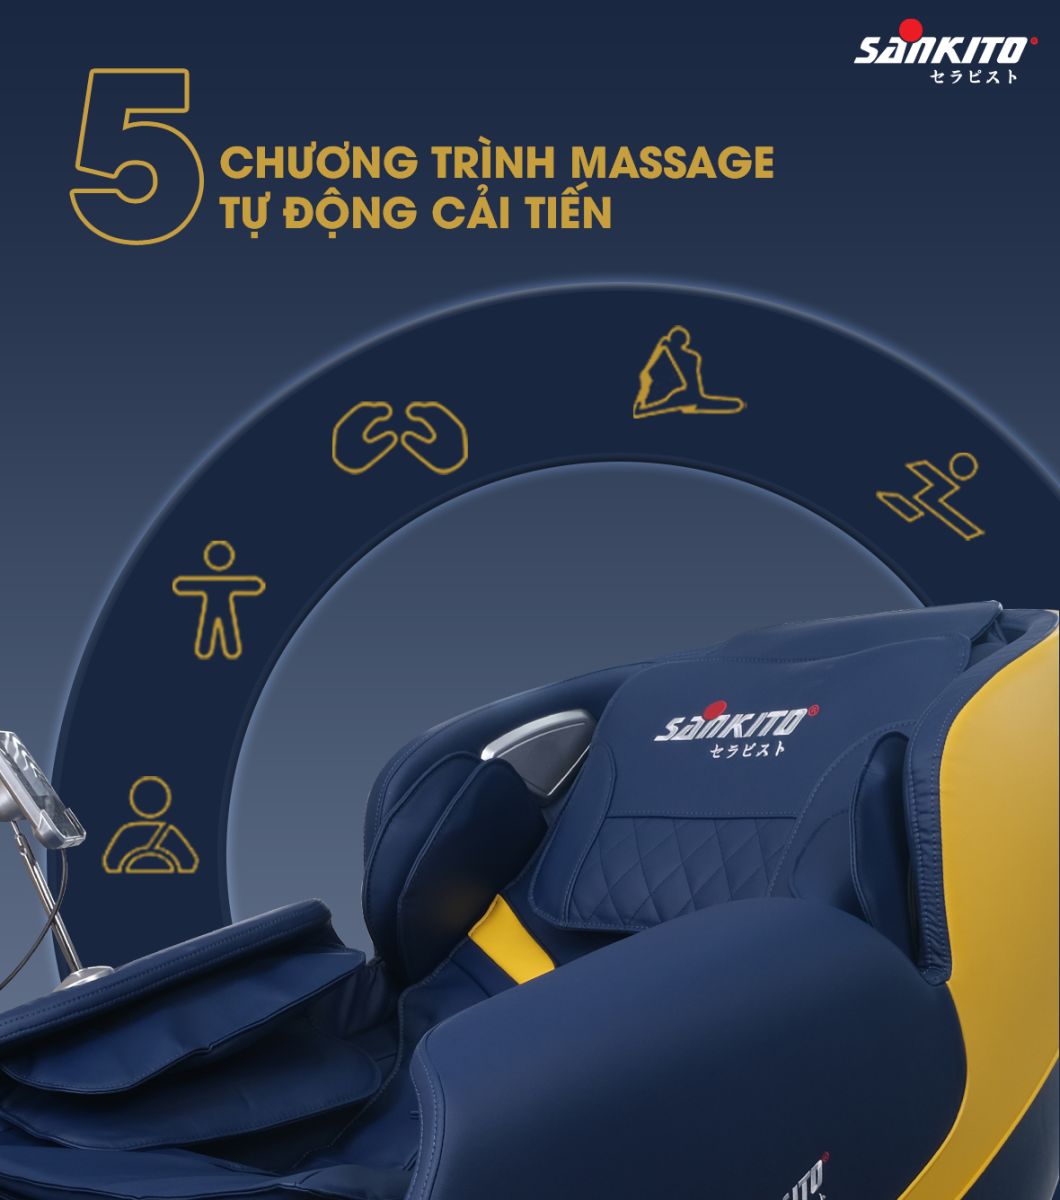 Ghế massage Sankito S-40 5 chương trình massage tự động cải tiến